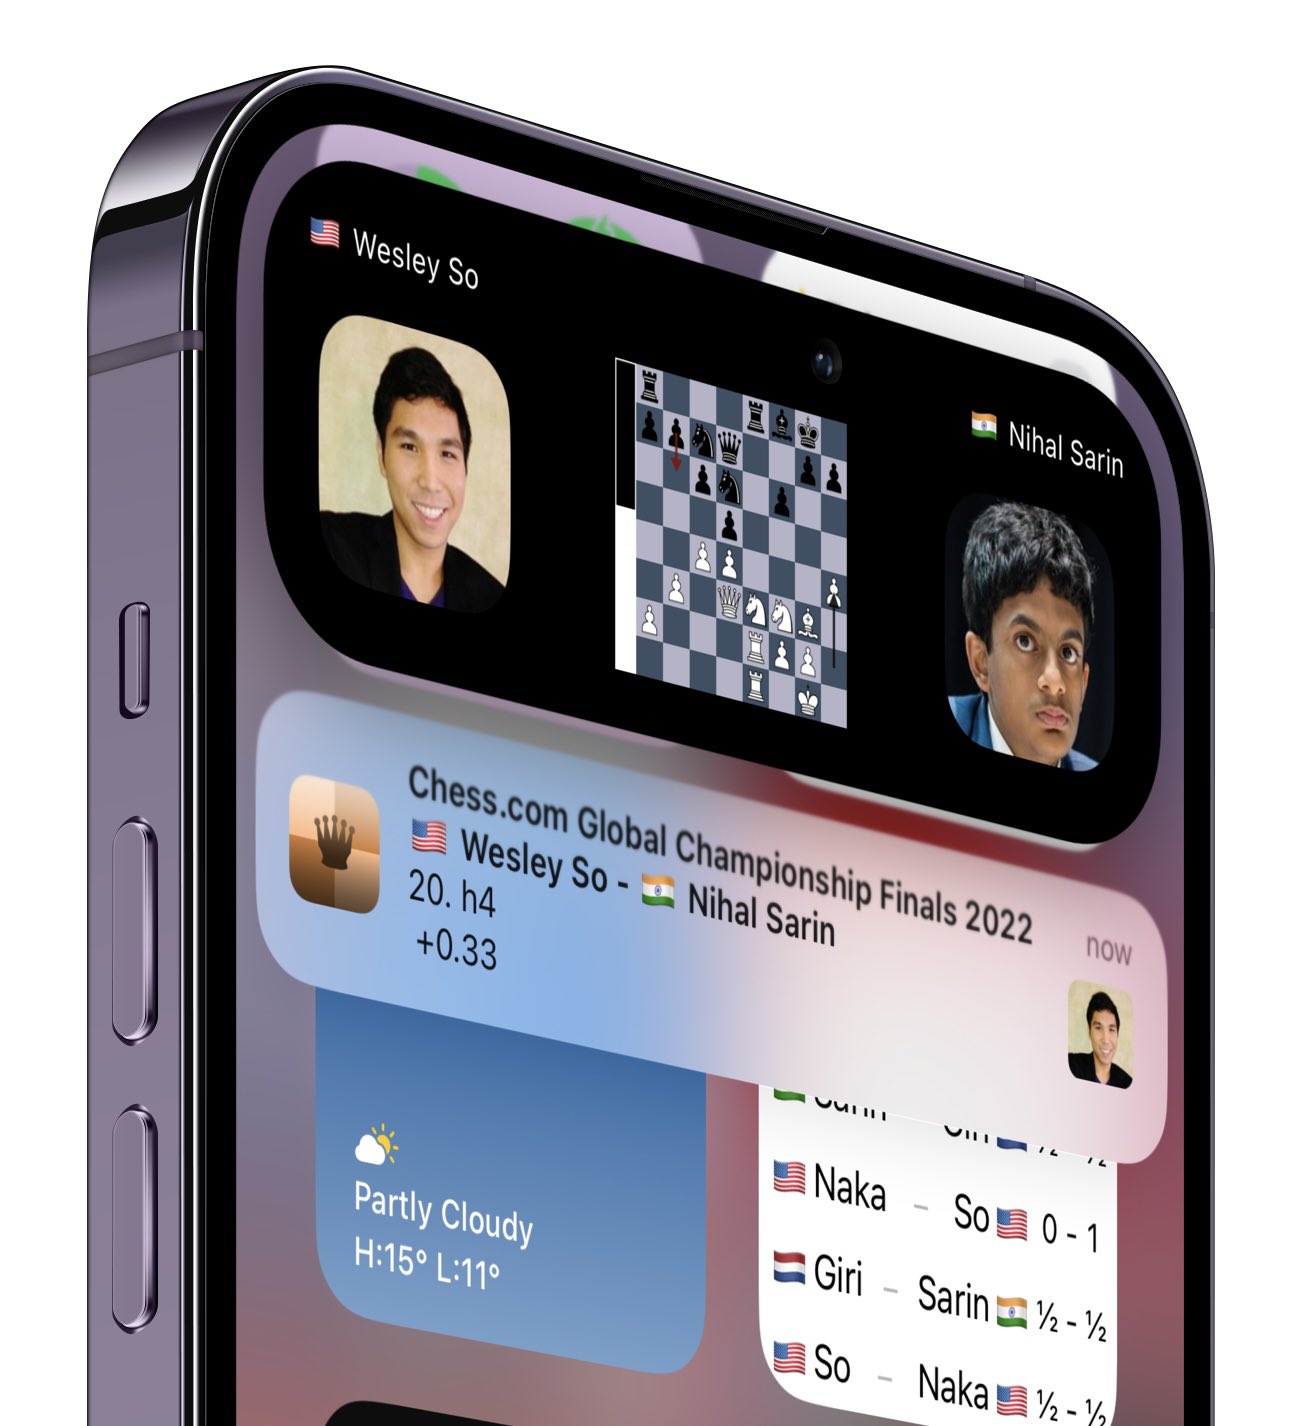 Follow Chess iOS App 